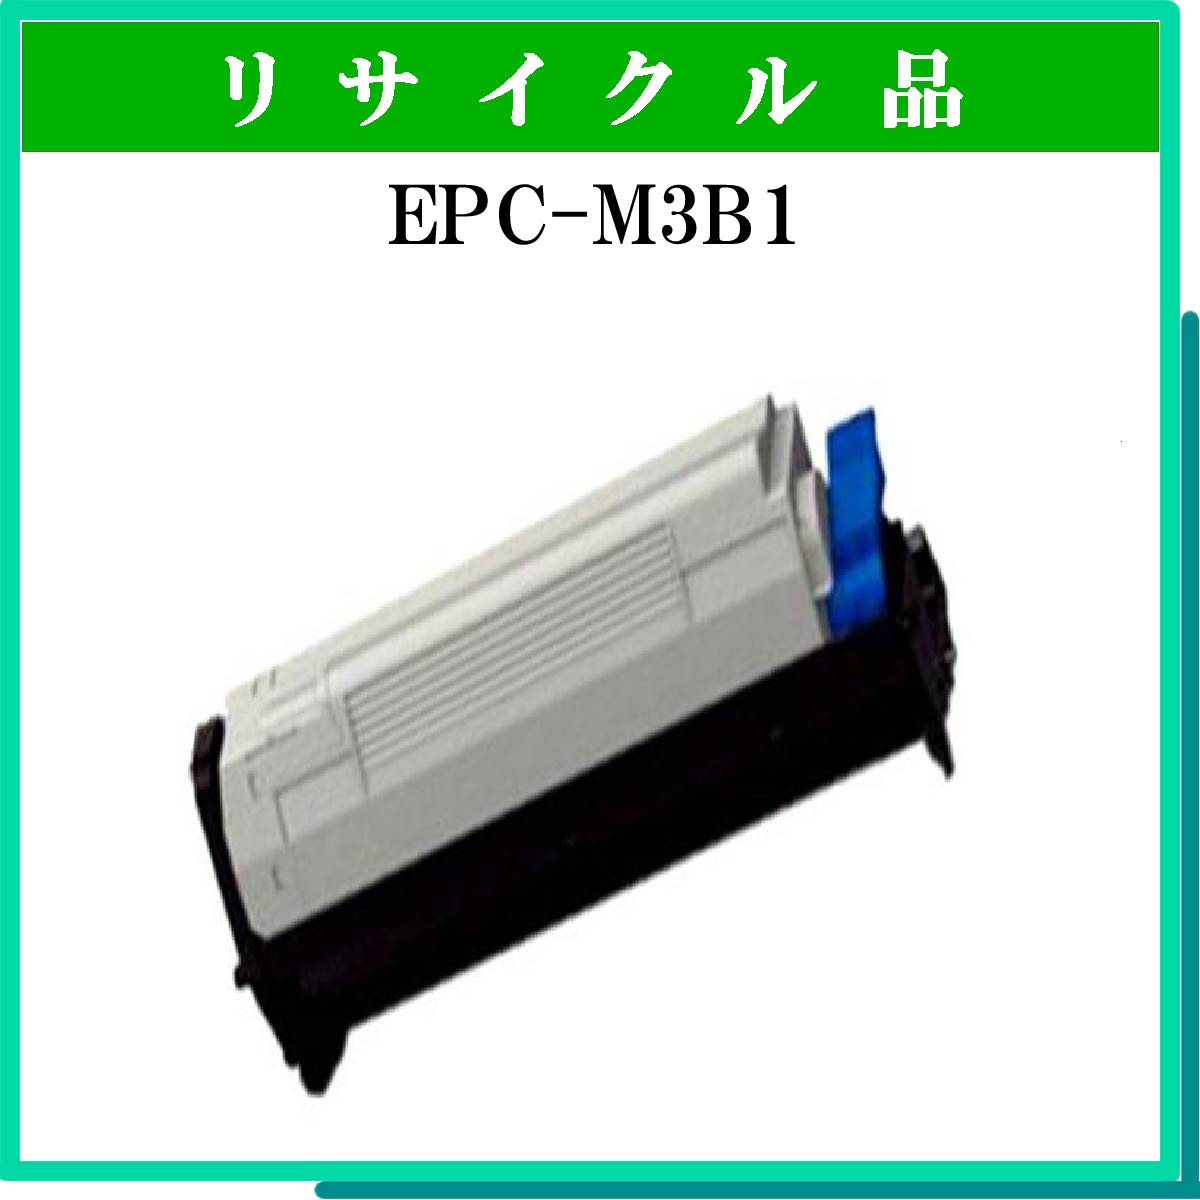 EPC-M3B1